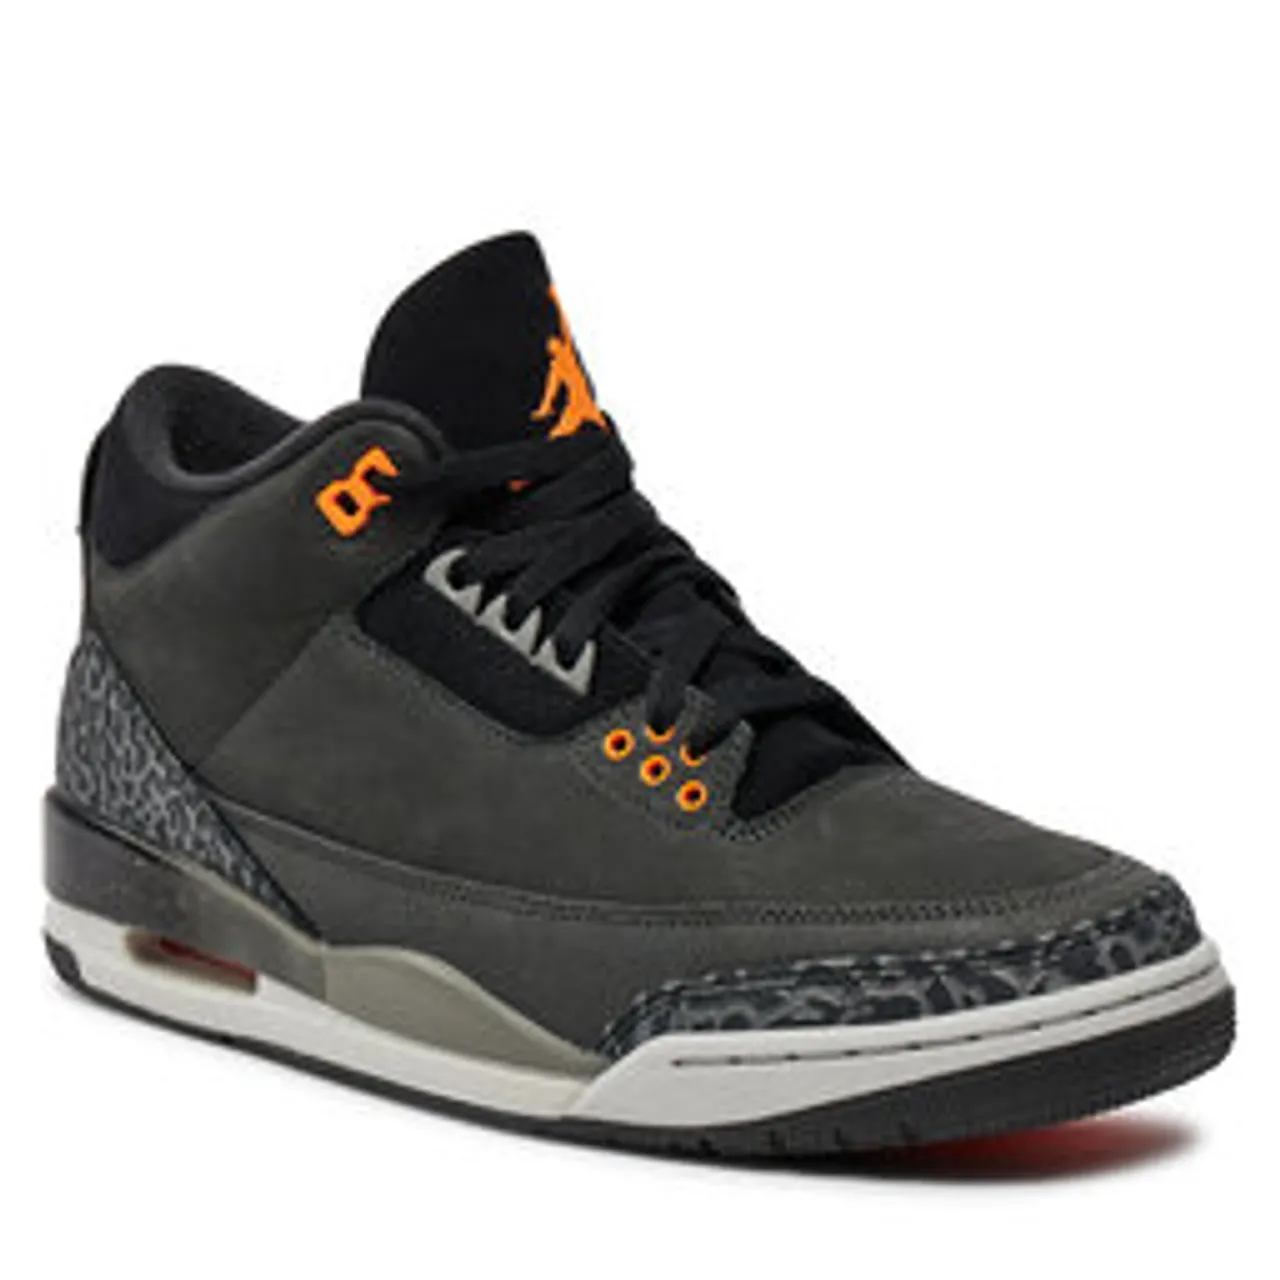 Sneakers Nike Air Jordan 3 Retro CT8532 080 Grau